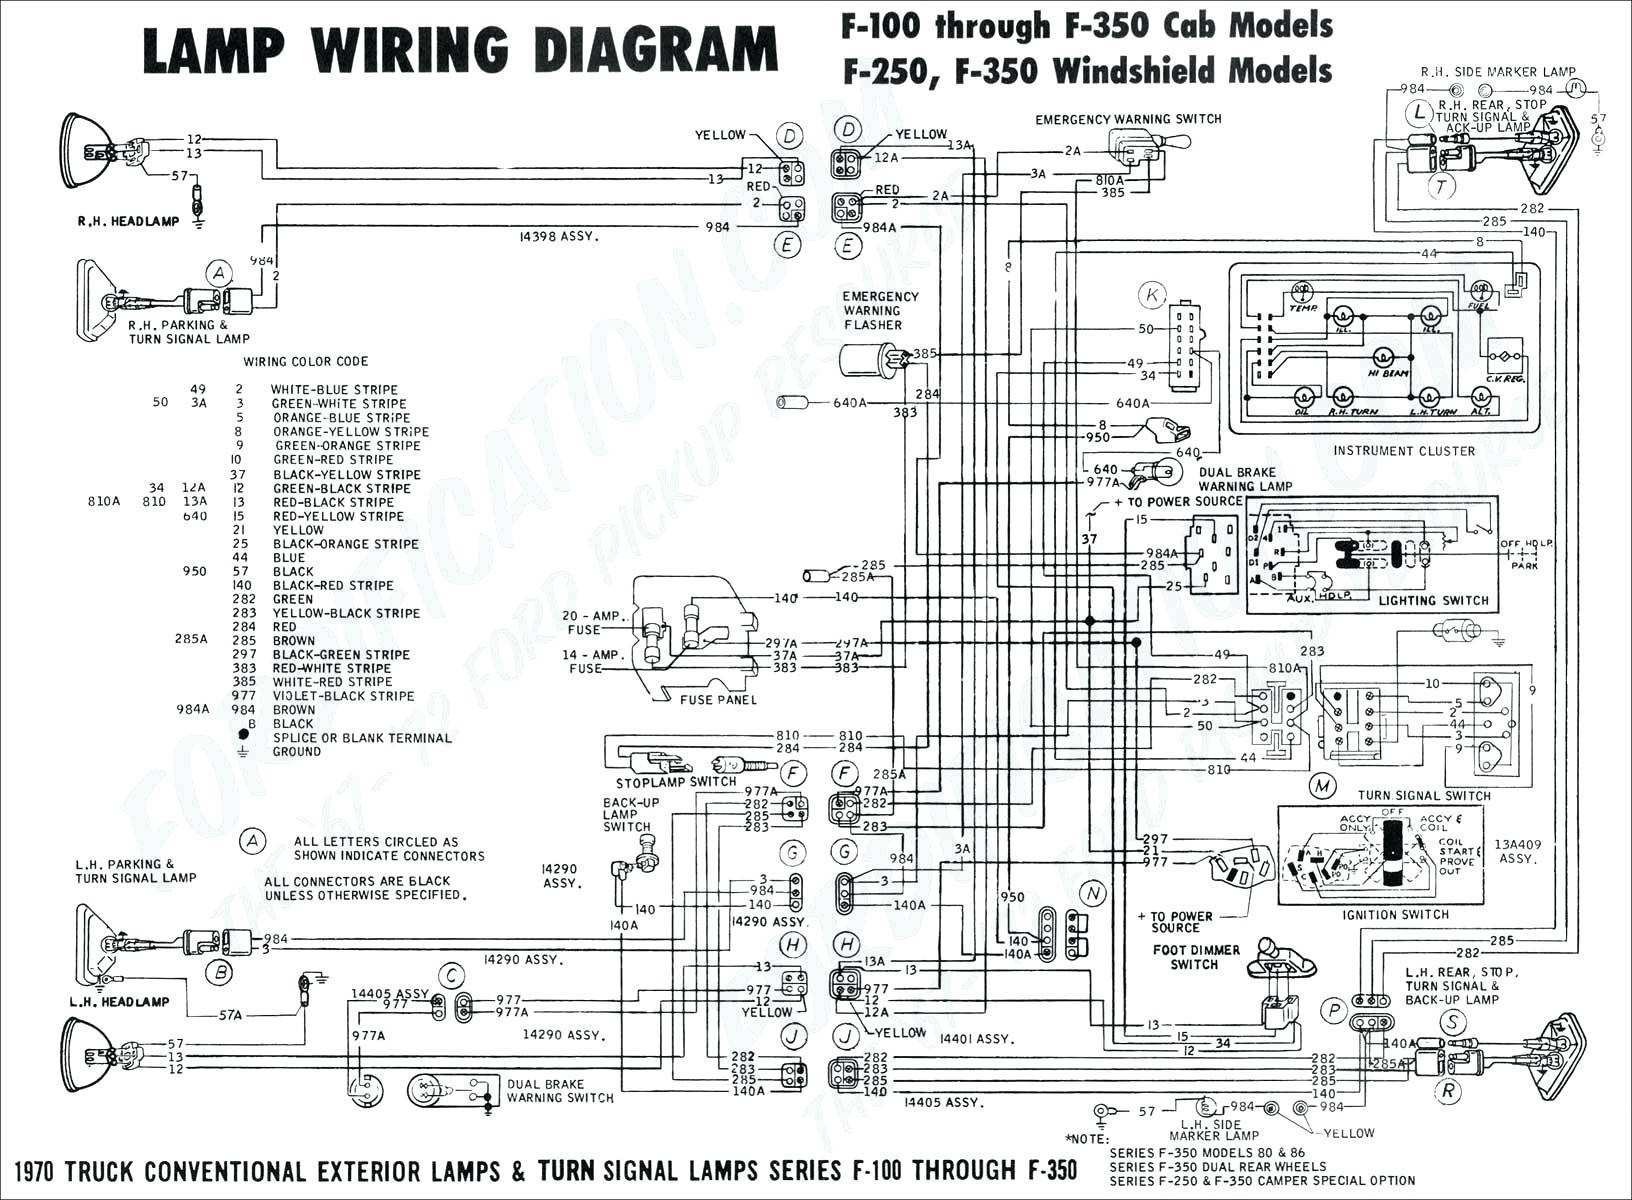 2001 Pontiac Grand Prix Engine Diagram Diagram Fuse Box 1999 Dodge Ram 1500 Wiring Schematics Diagram Of 2001 Pontiac Grand Prix Engine Diagram